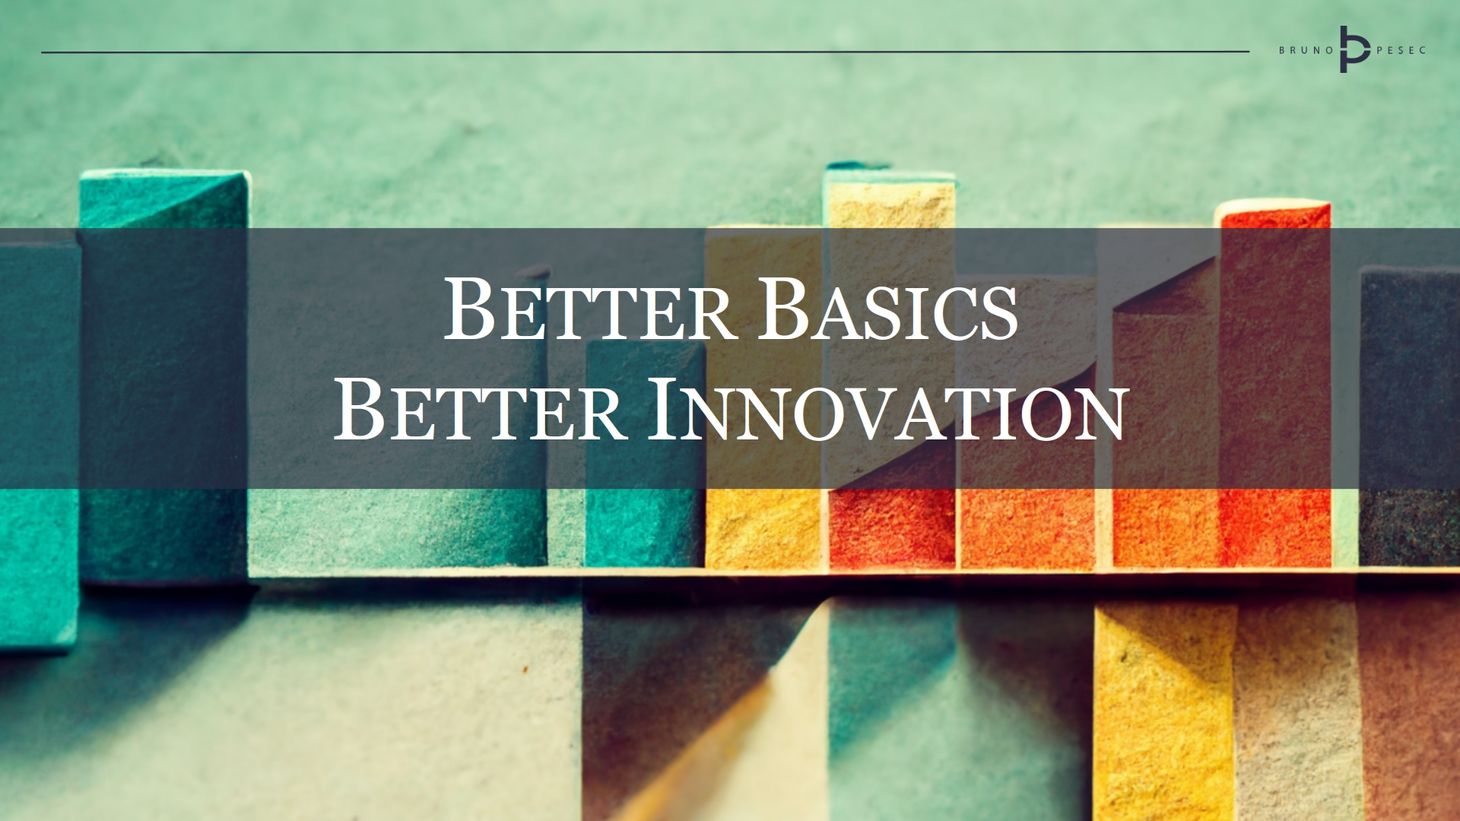 Better basics, better innovation